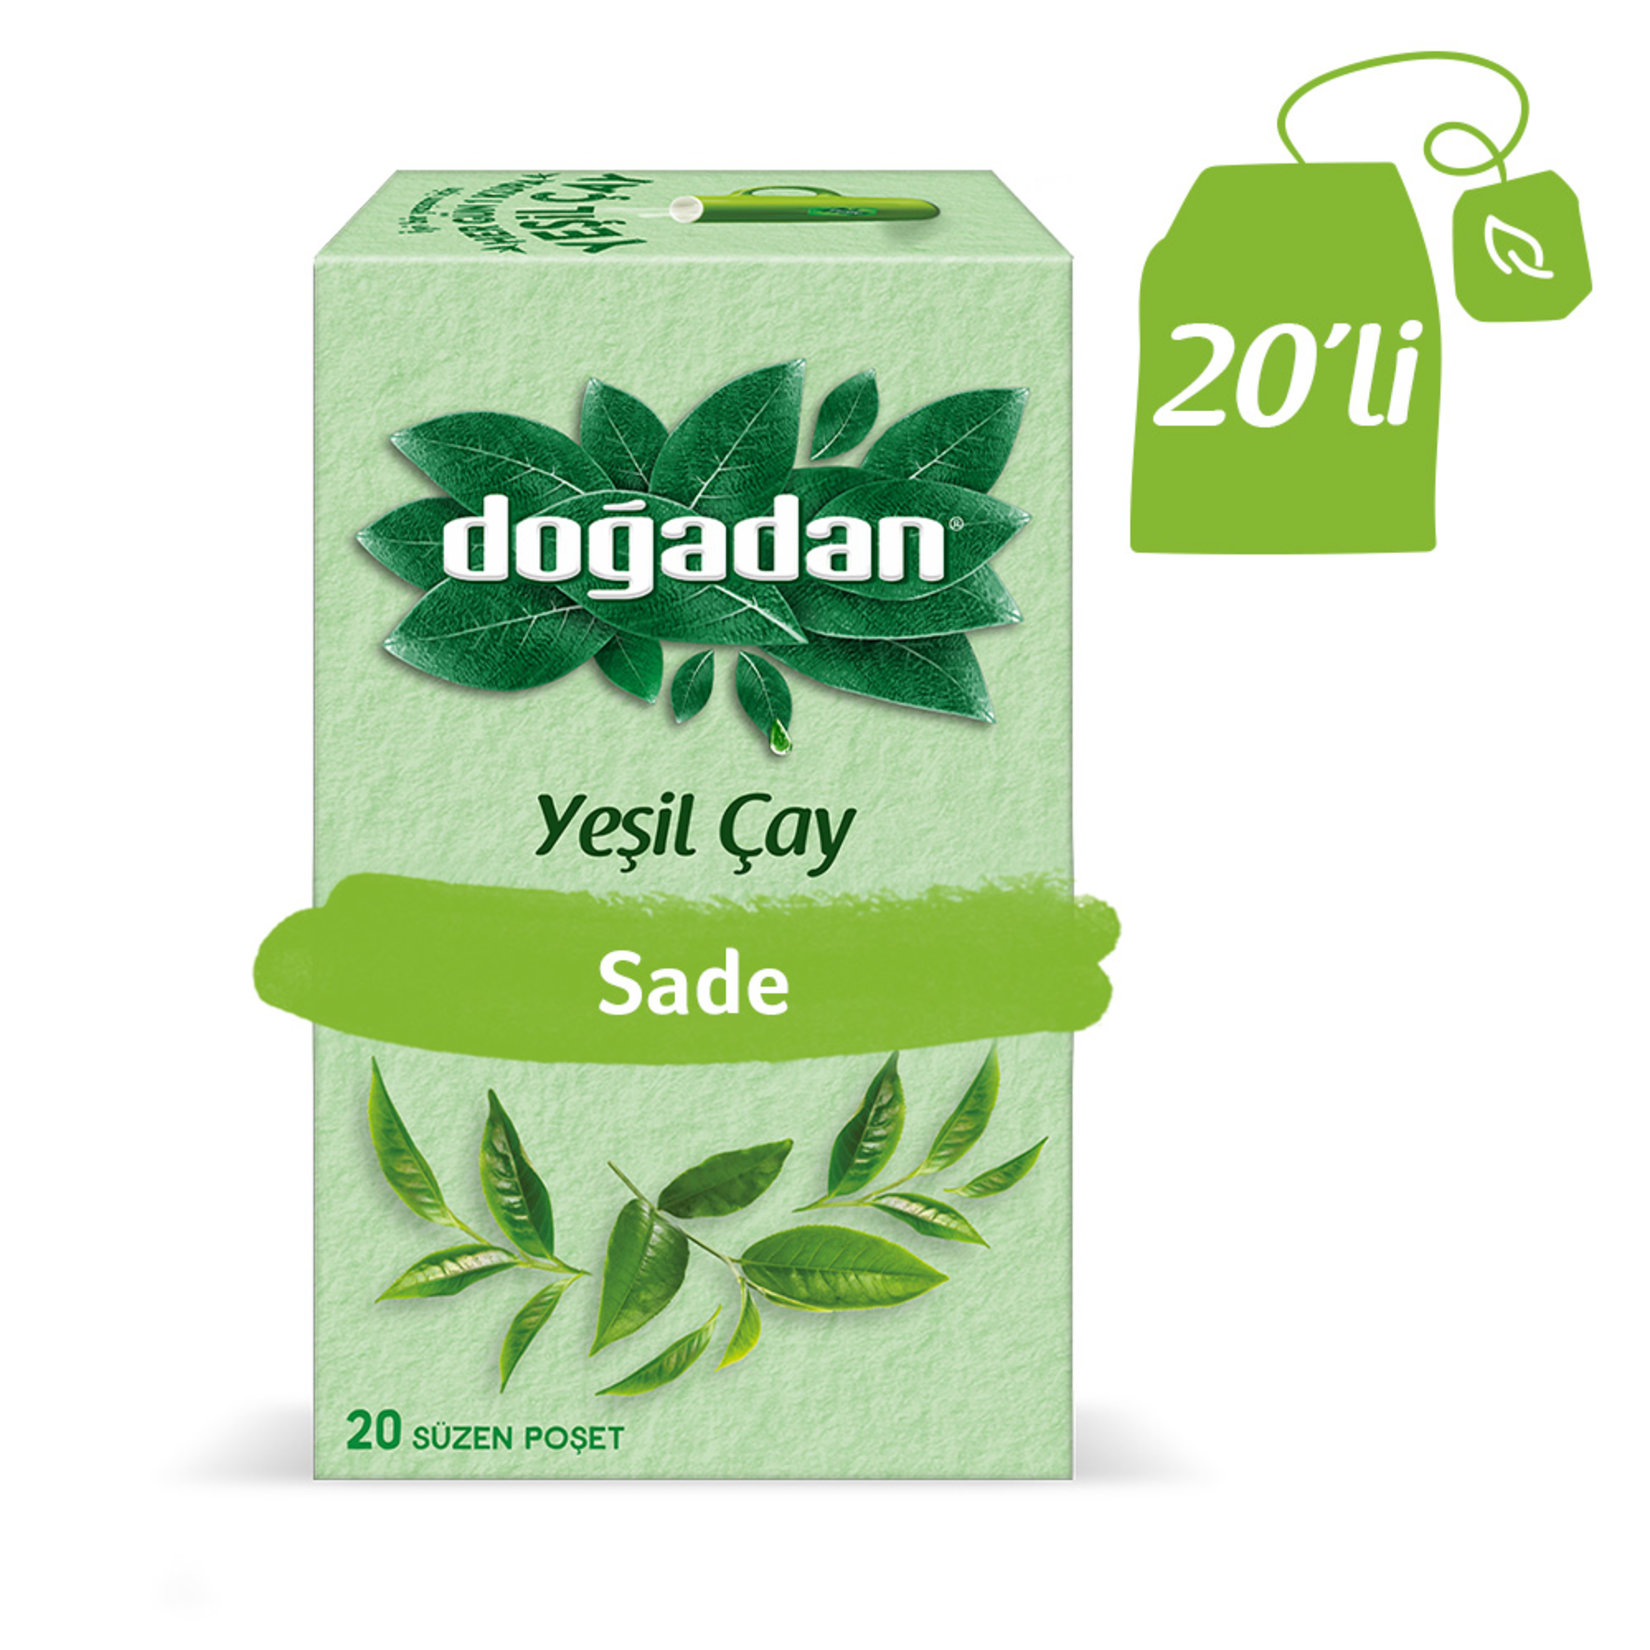 Doğadan - Green Tea 20 Bags in Box